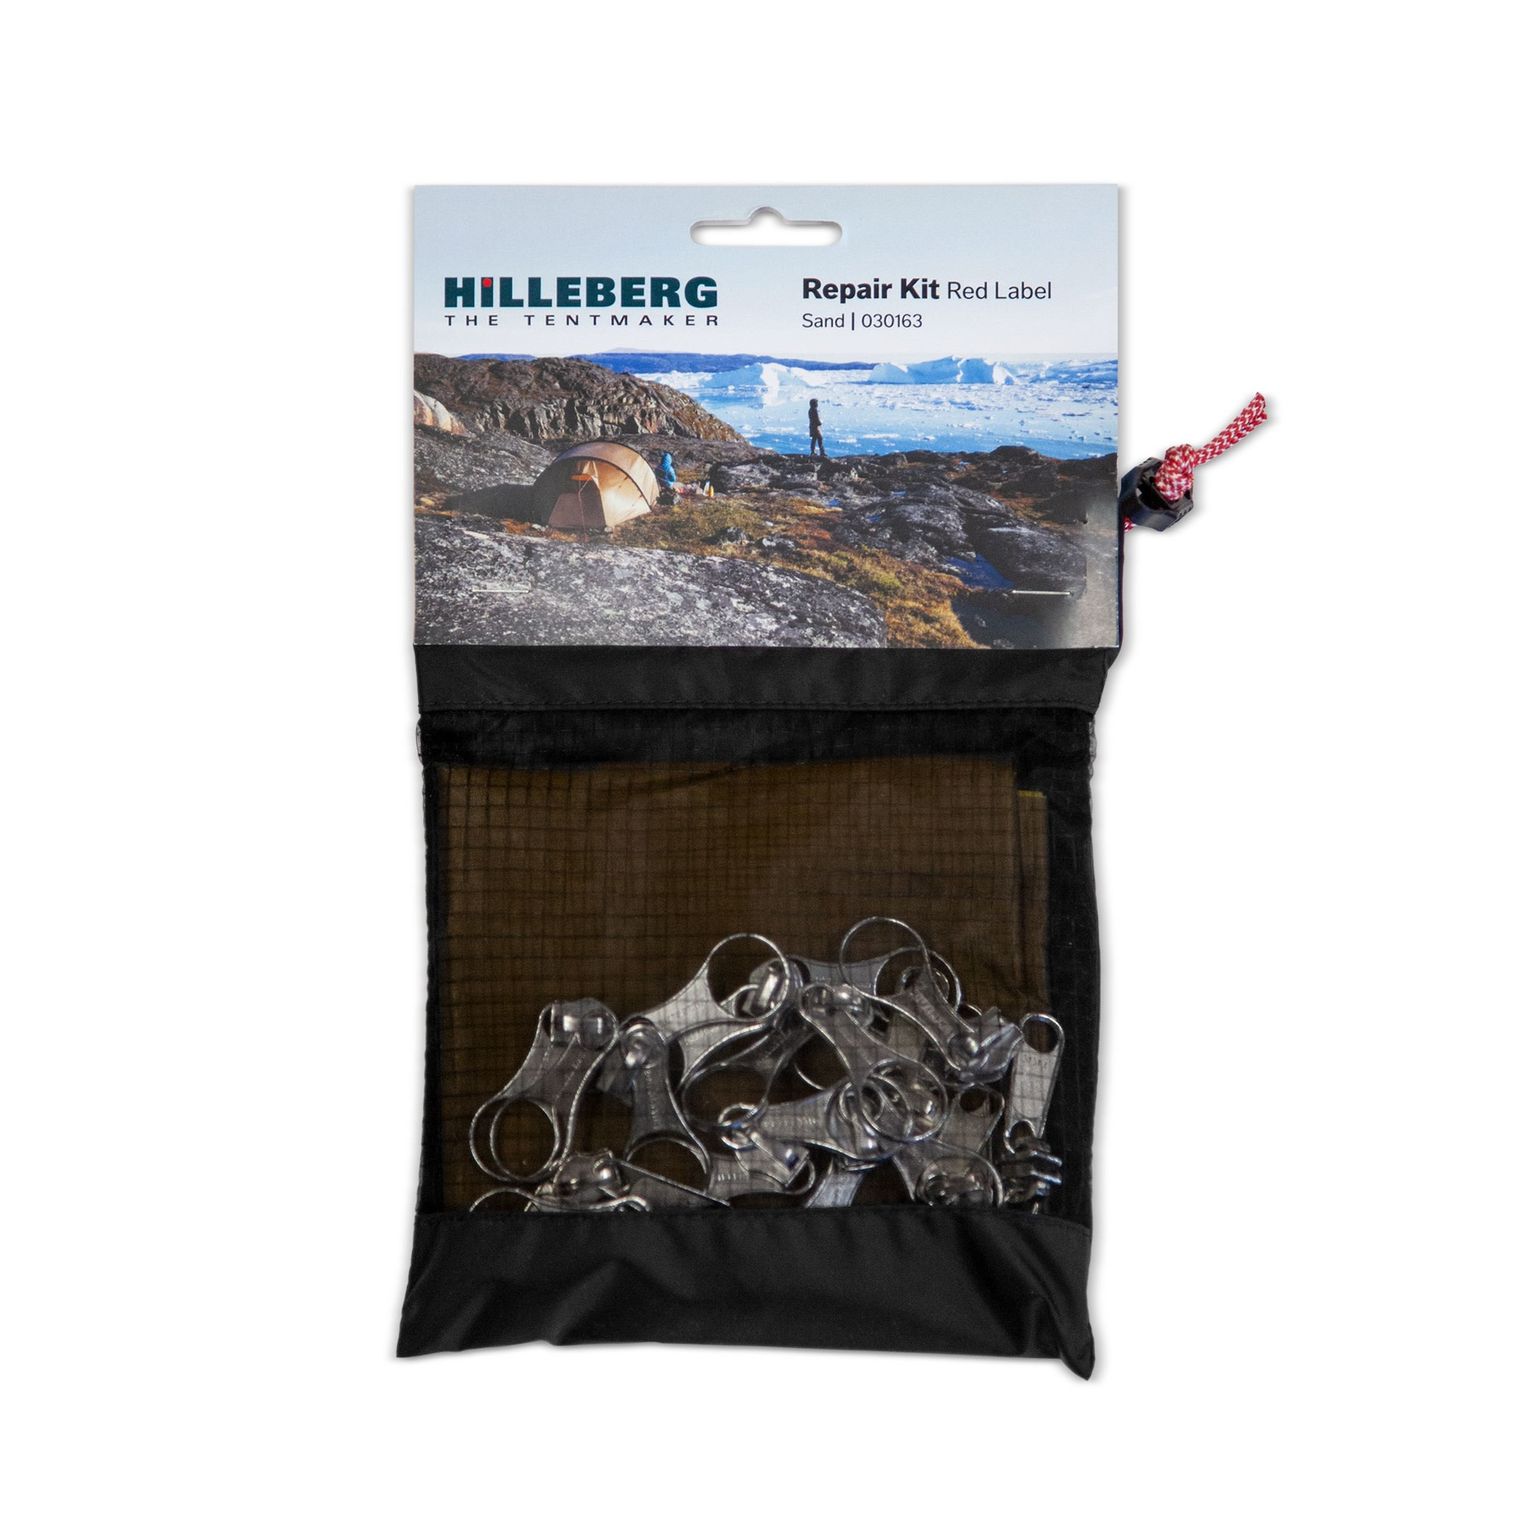 Hilleberg Repair Kit Red Label sand